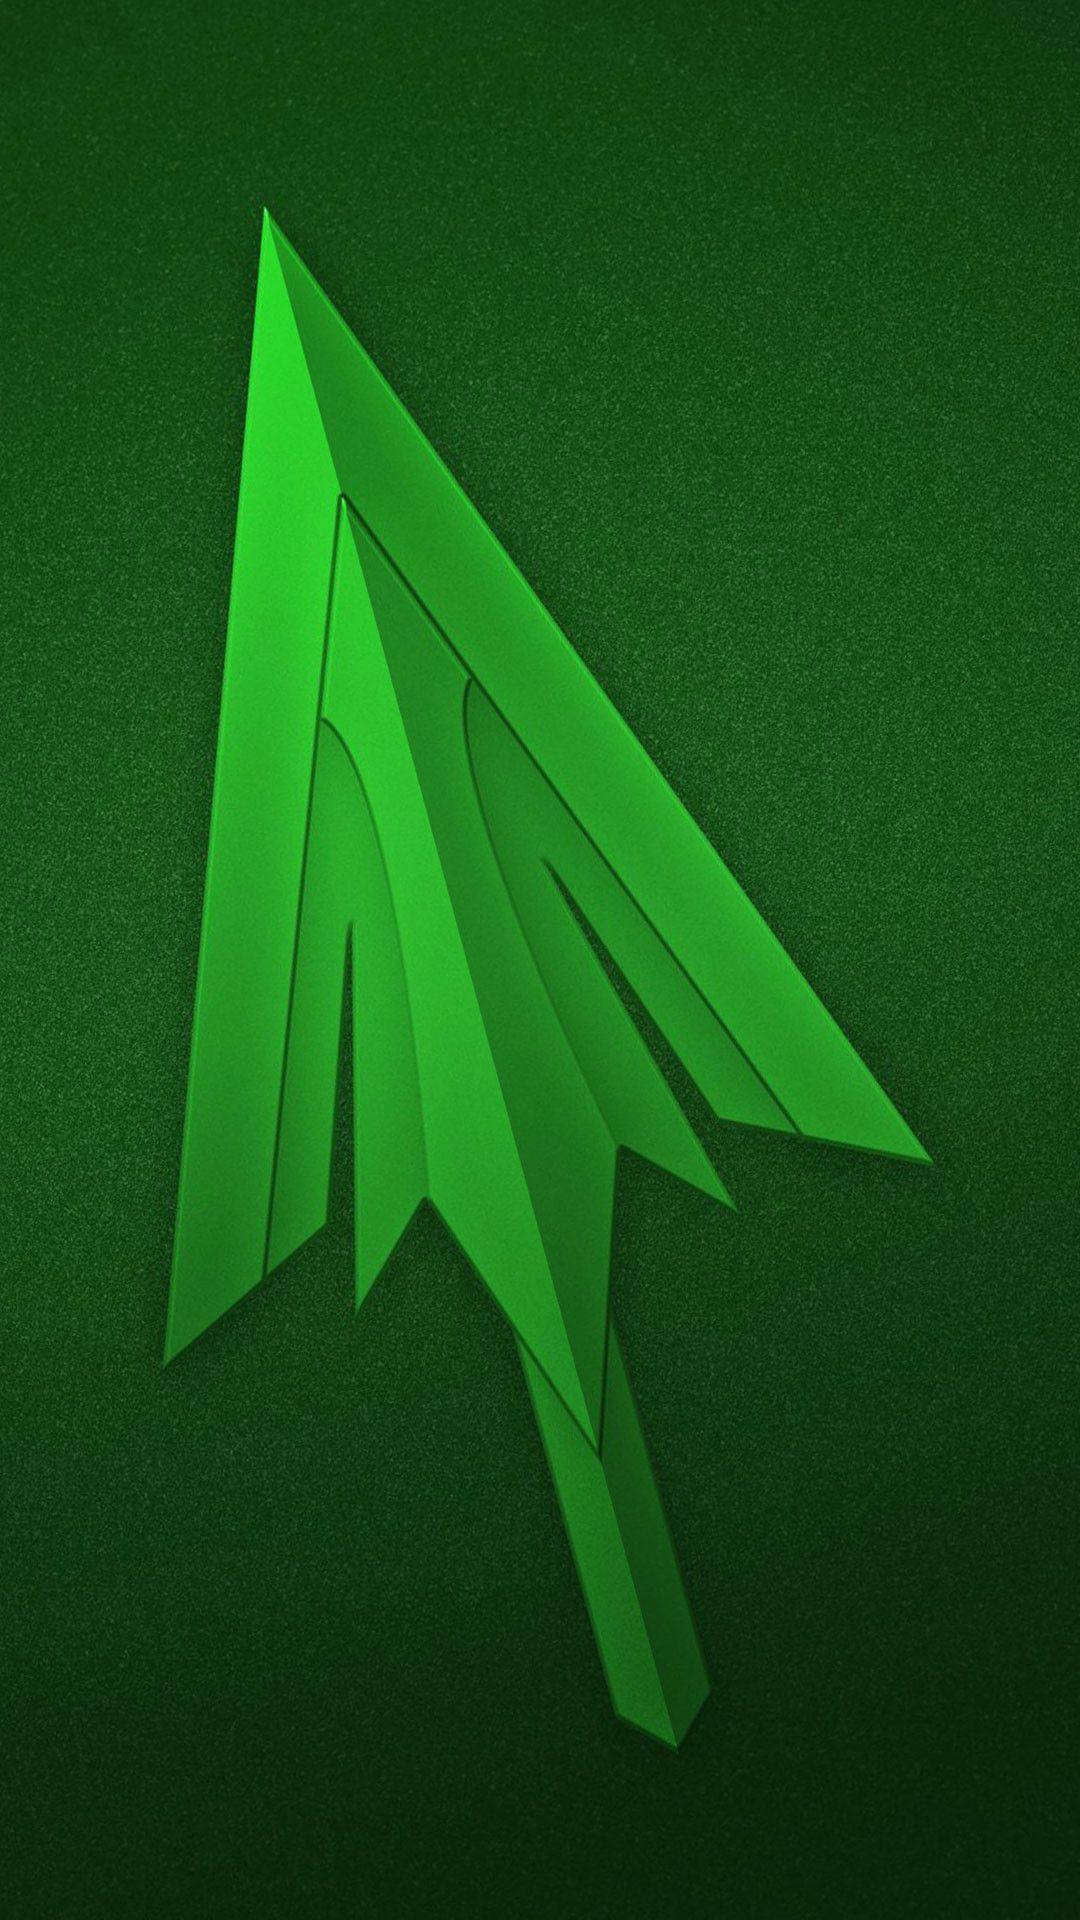 picd image greenarrowwallpaper. Green Arrow. Green arrow